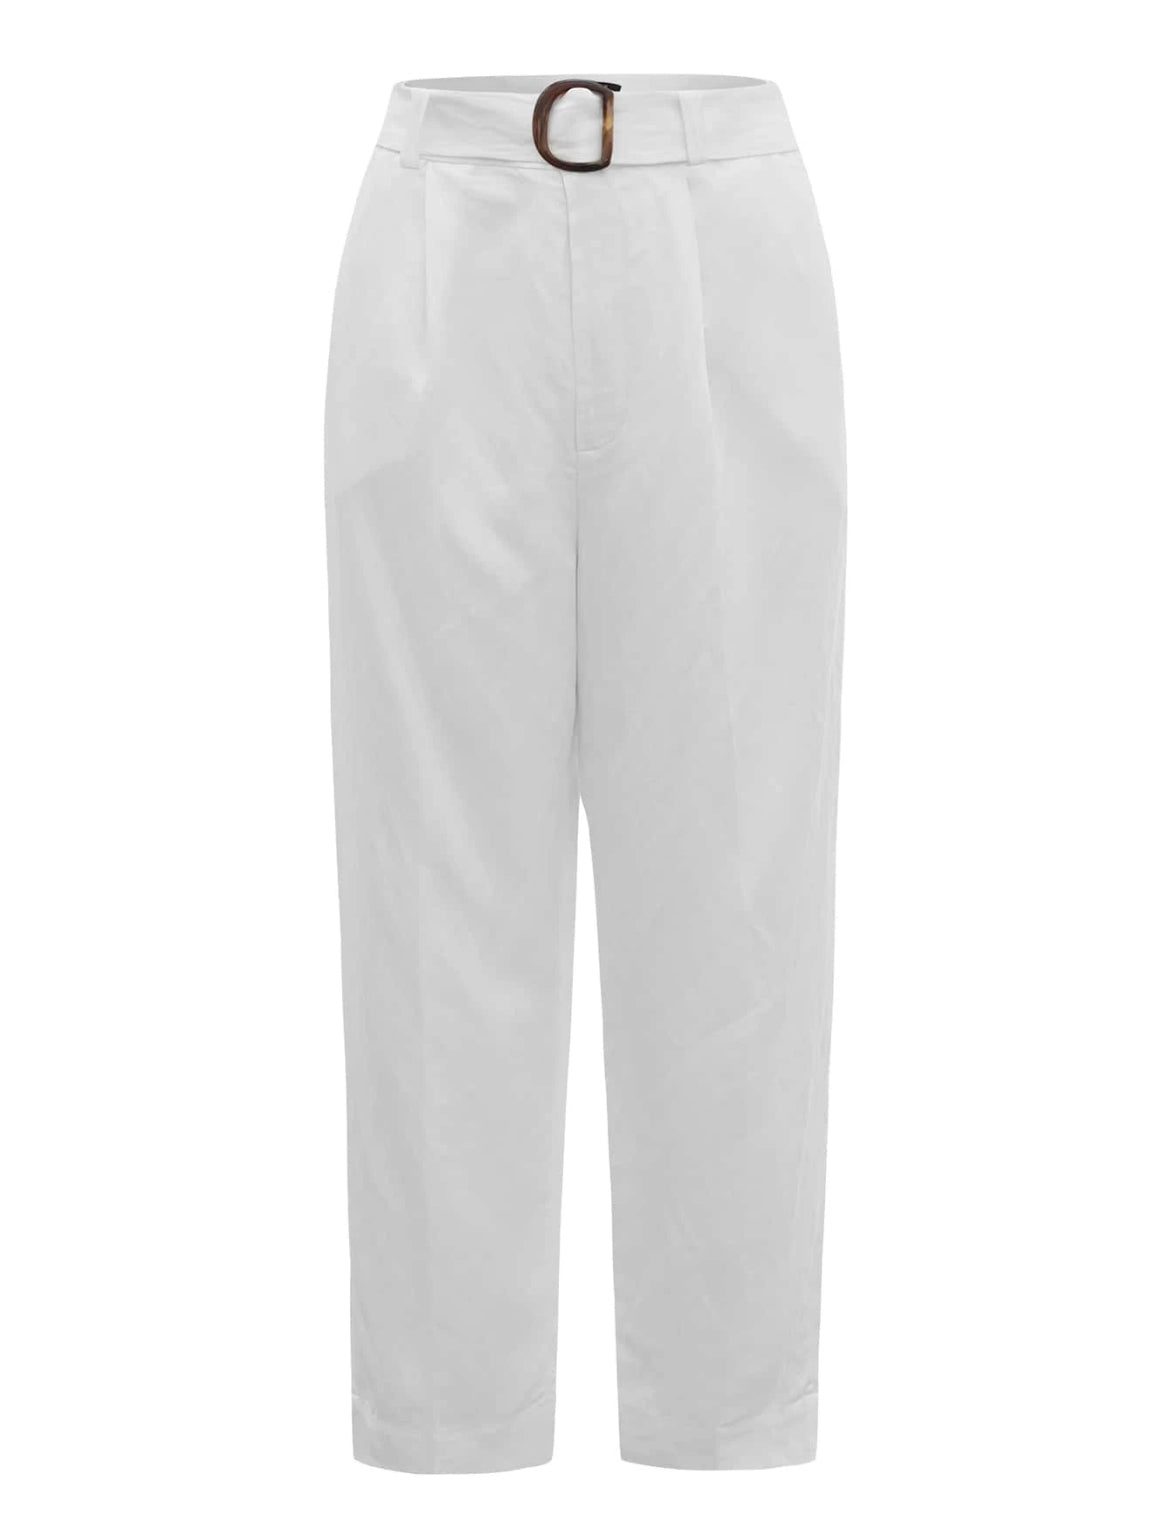 Pantalón blanco